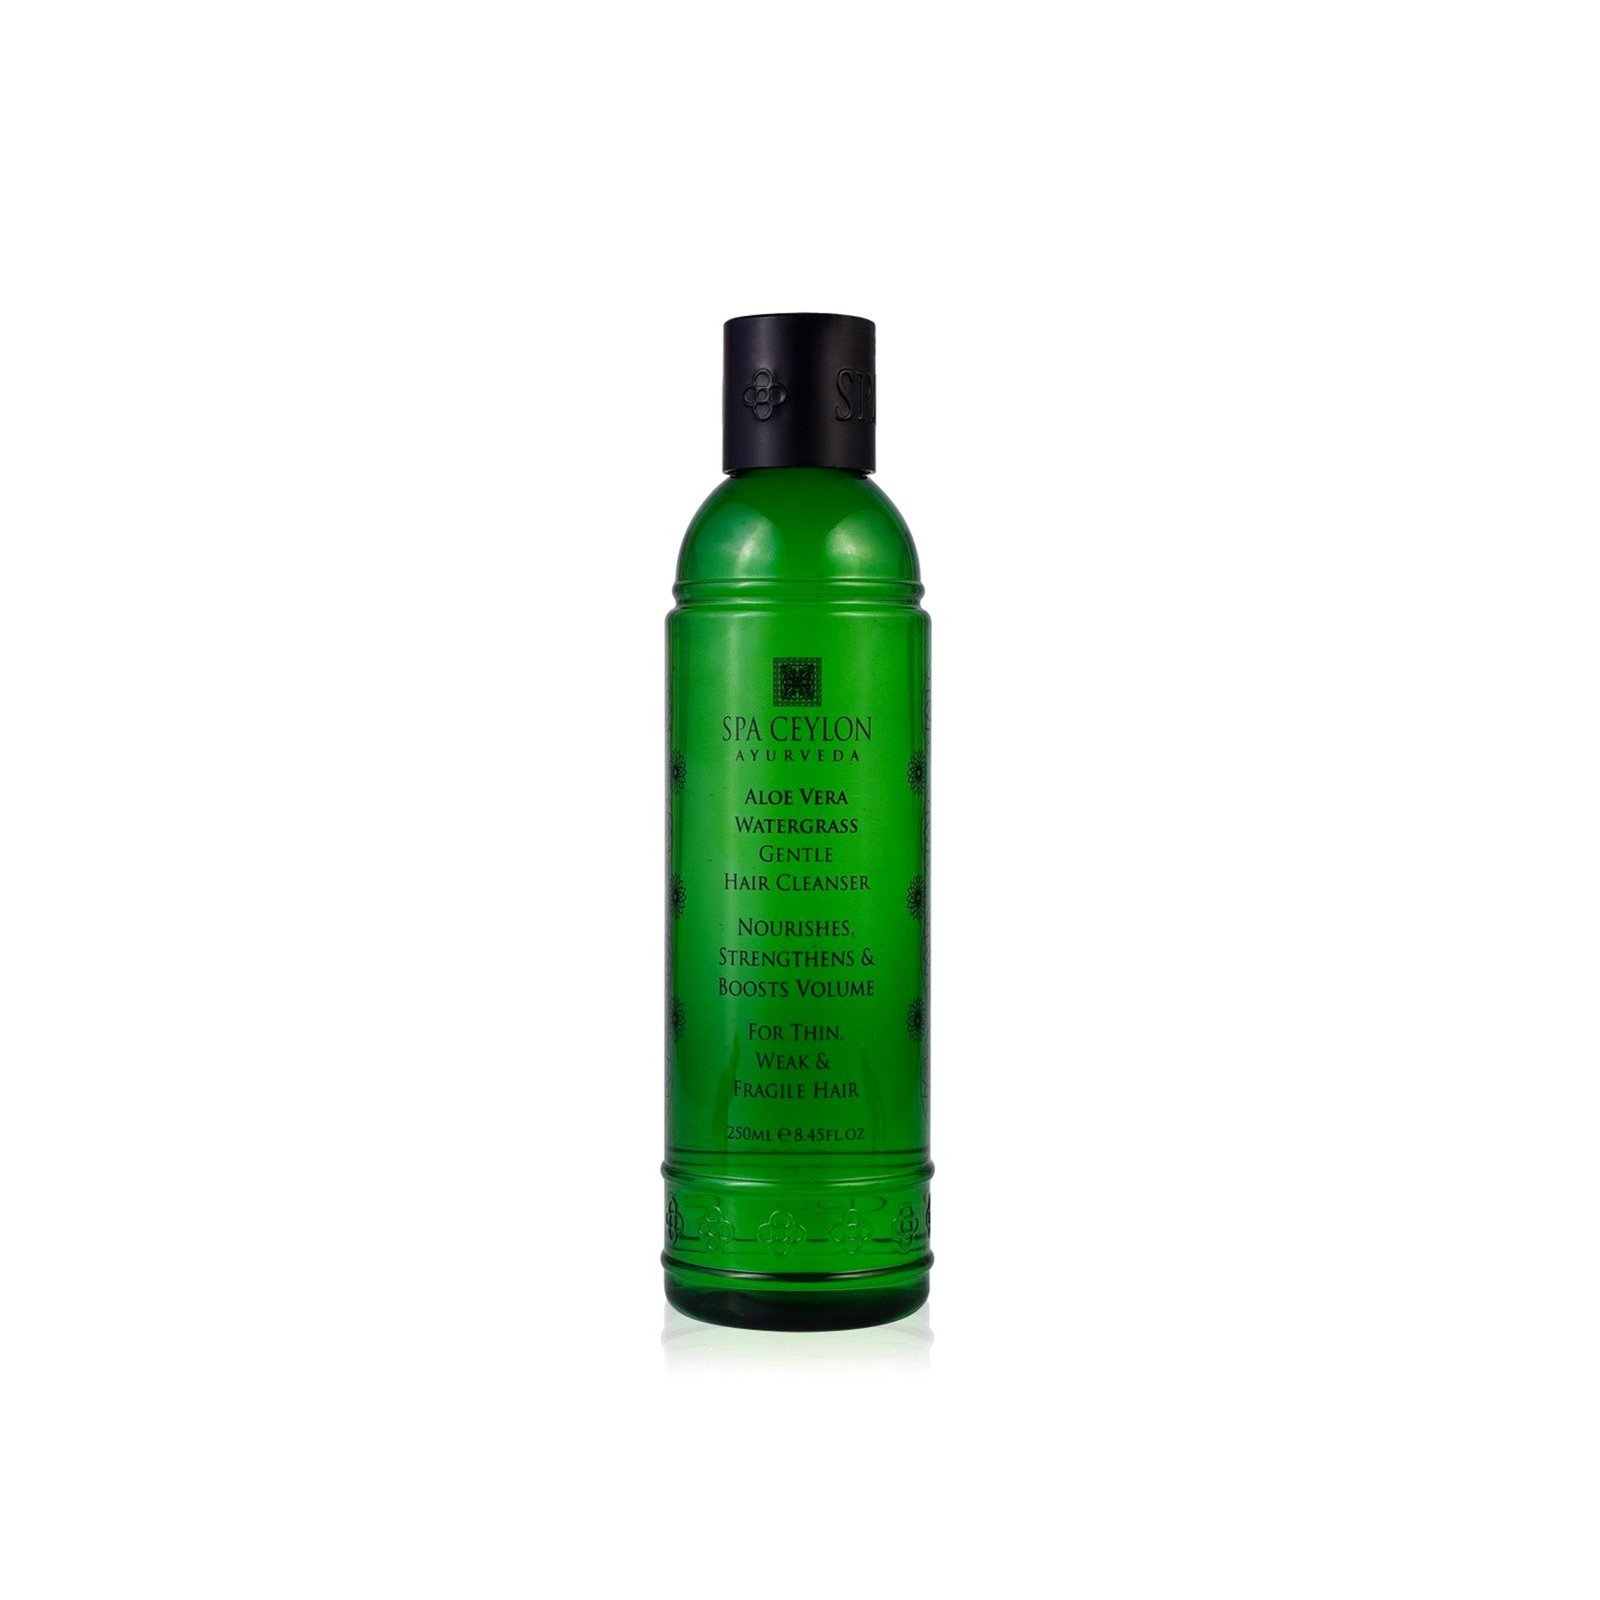 Spa Ceylon Aloe Vera Watergrass Gentle Hair Cleanser 250ml (8.45 fl oz)